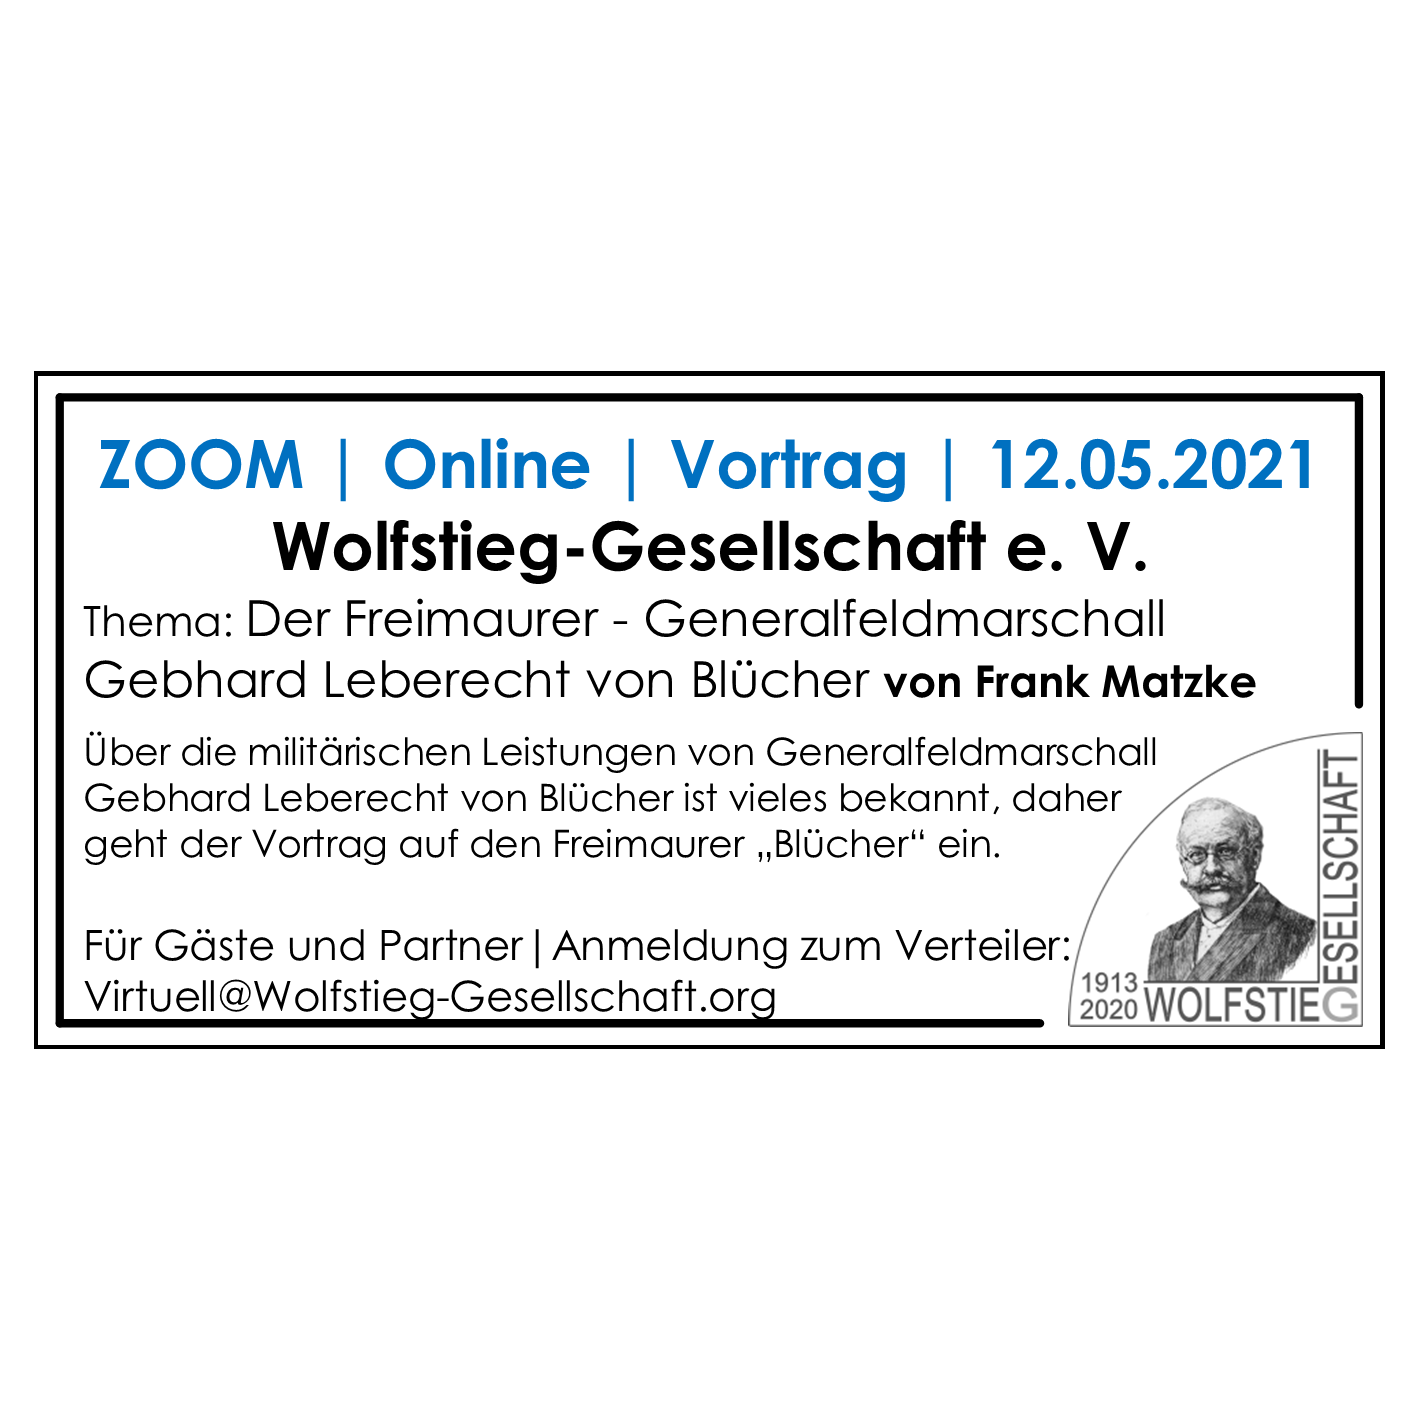 Zoom | 12.05.2021 | Der Freimaurer - Generalfeldmarschall Gebhard Leberecht von Blücher von Frank Matzke  